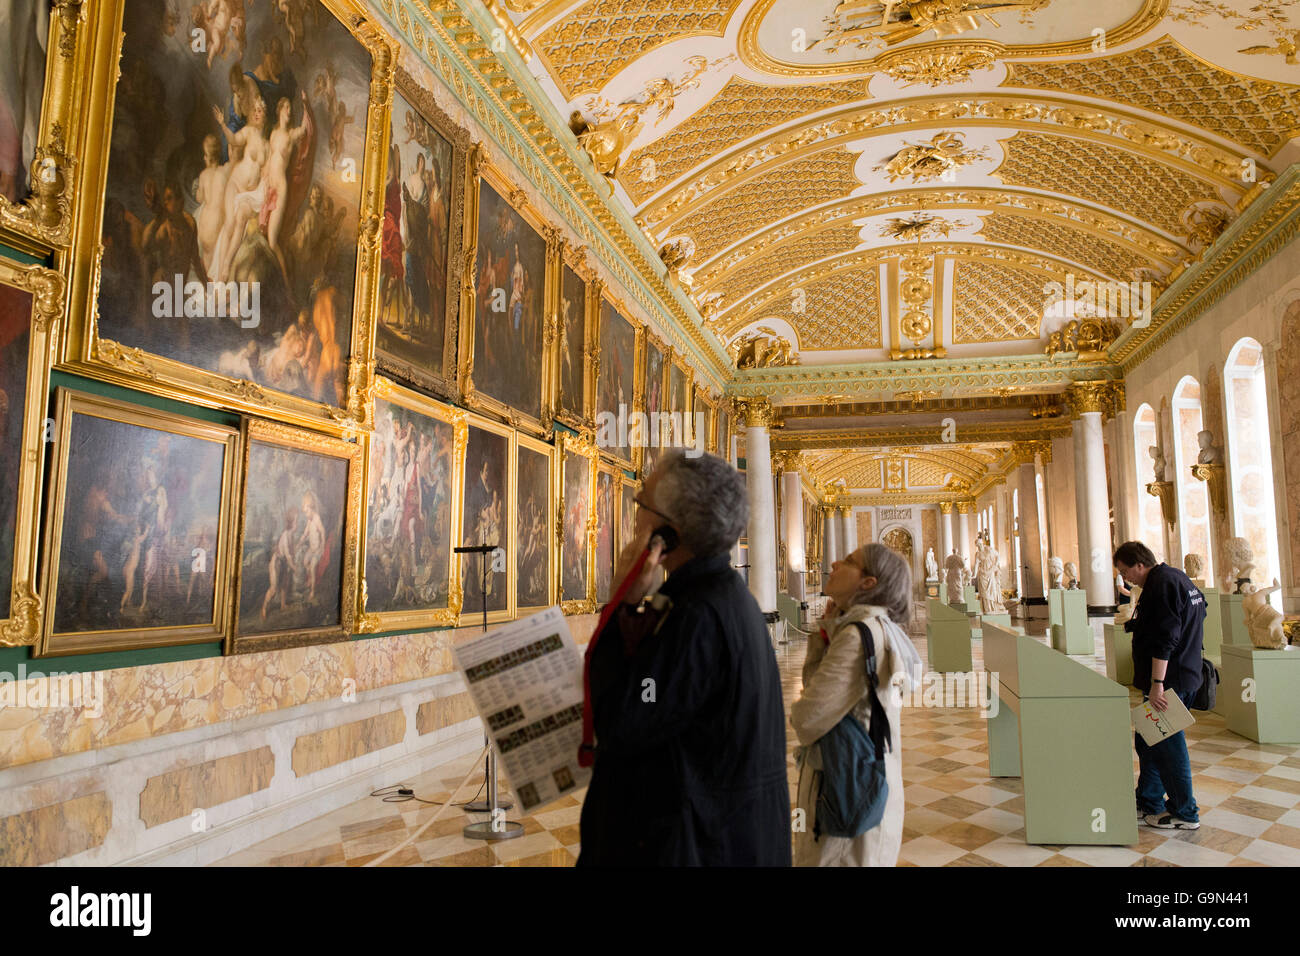 Eine Bildergalerie von Sanssouci Palast in der Unesco Liste. Es gilt als das letzte große preußische Barockschloss. Stockfoto